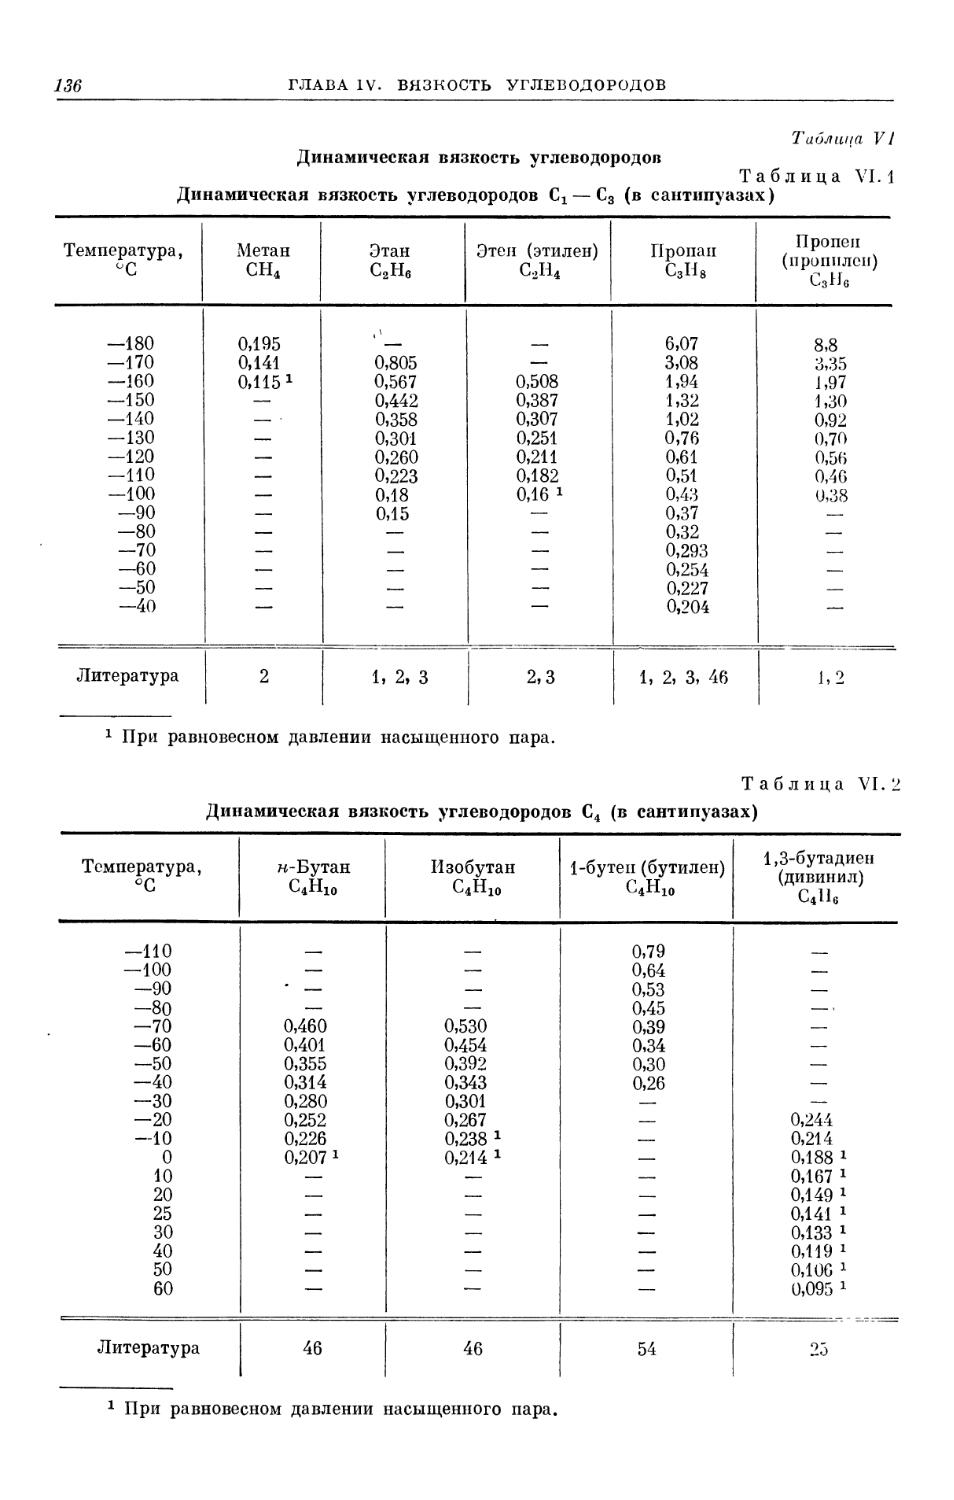 Таблица VI. Динамическая вязкость углеводородов